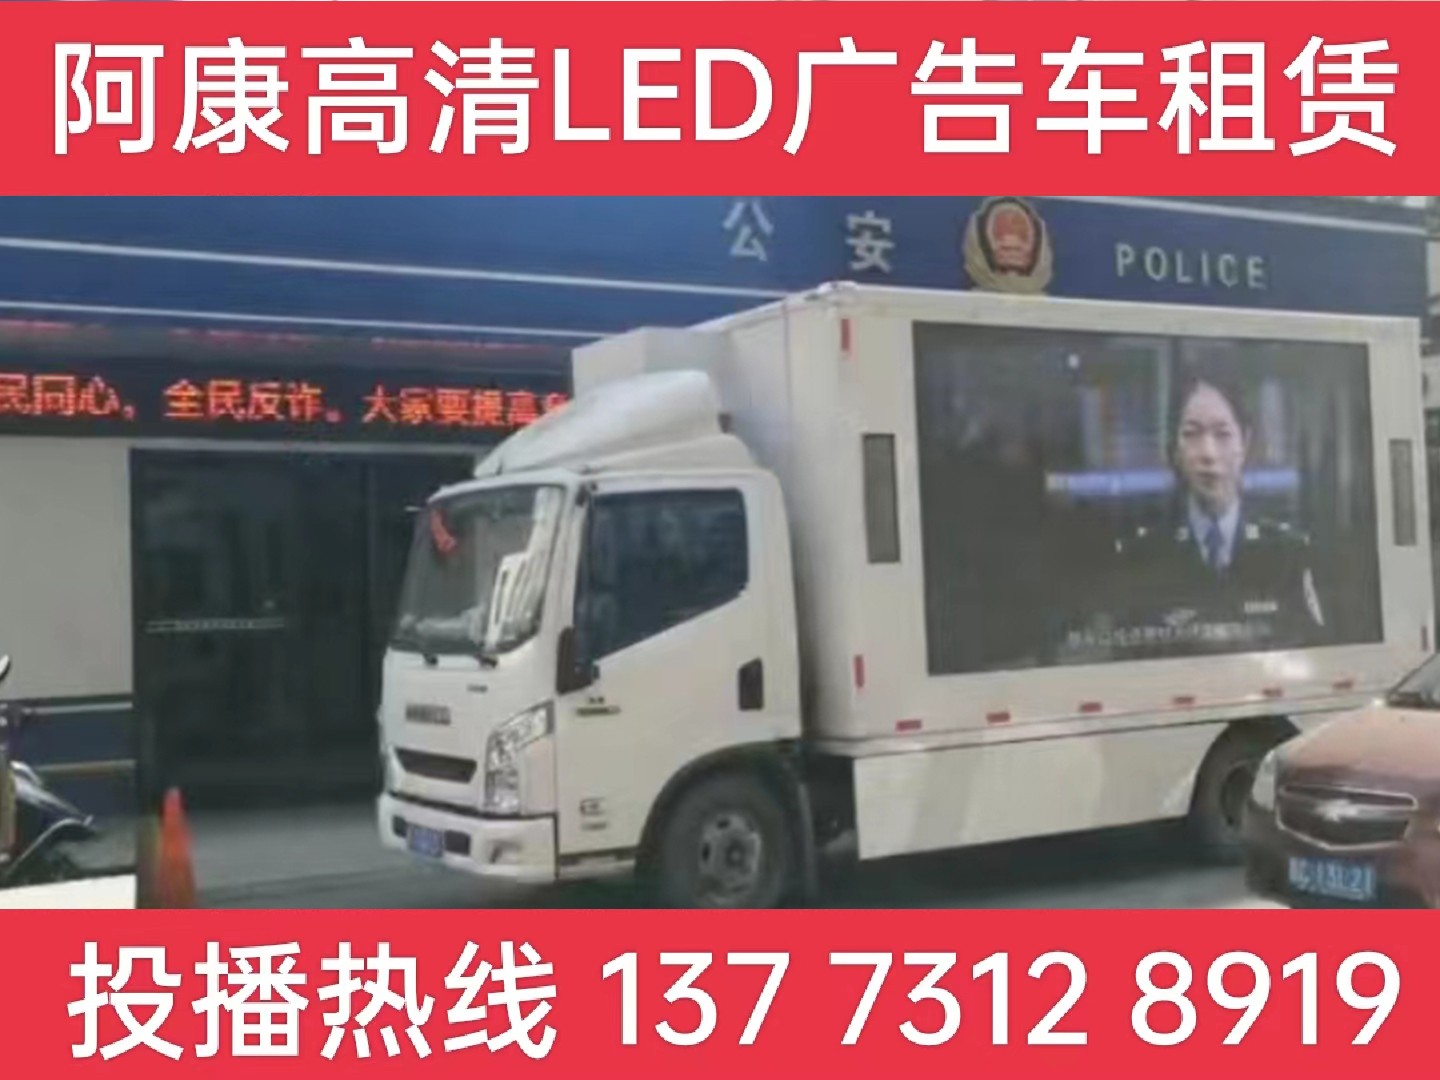 高邮LED广告车租赁-反诈宣传